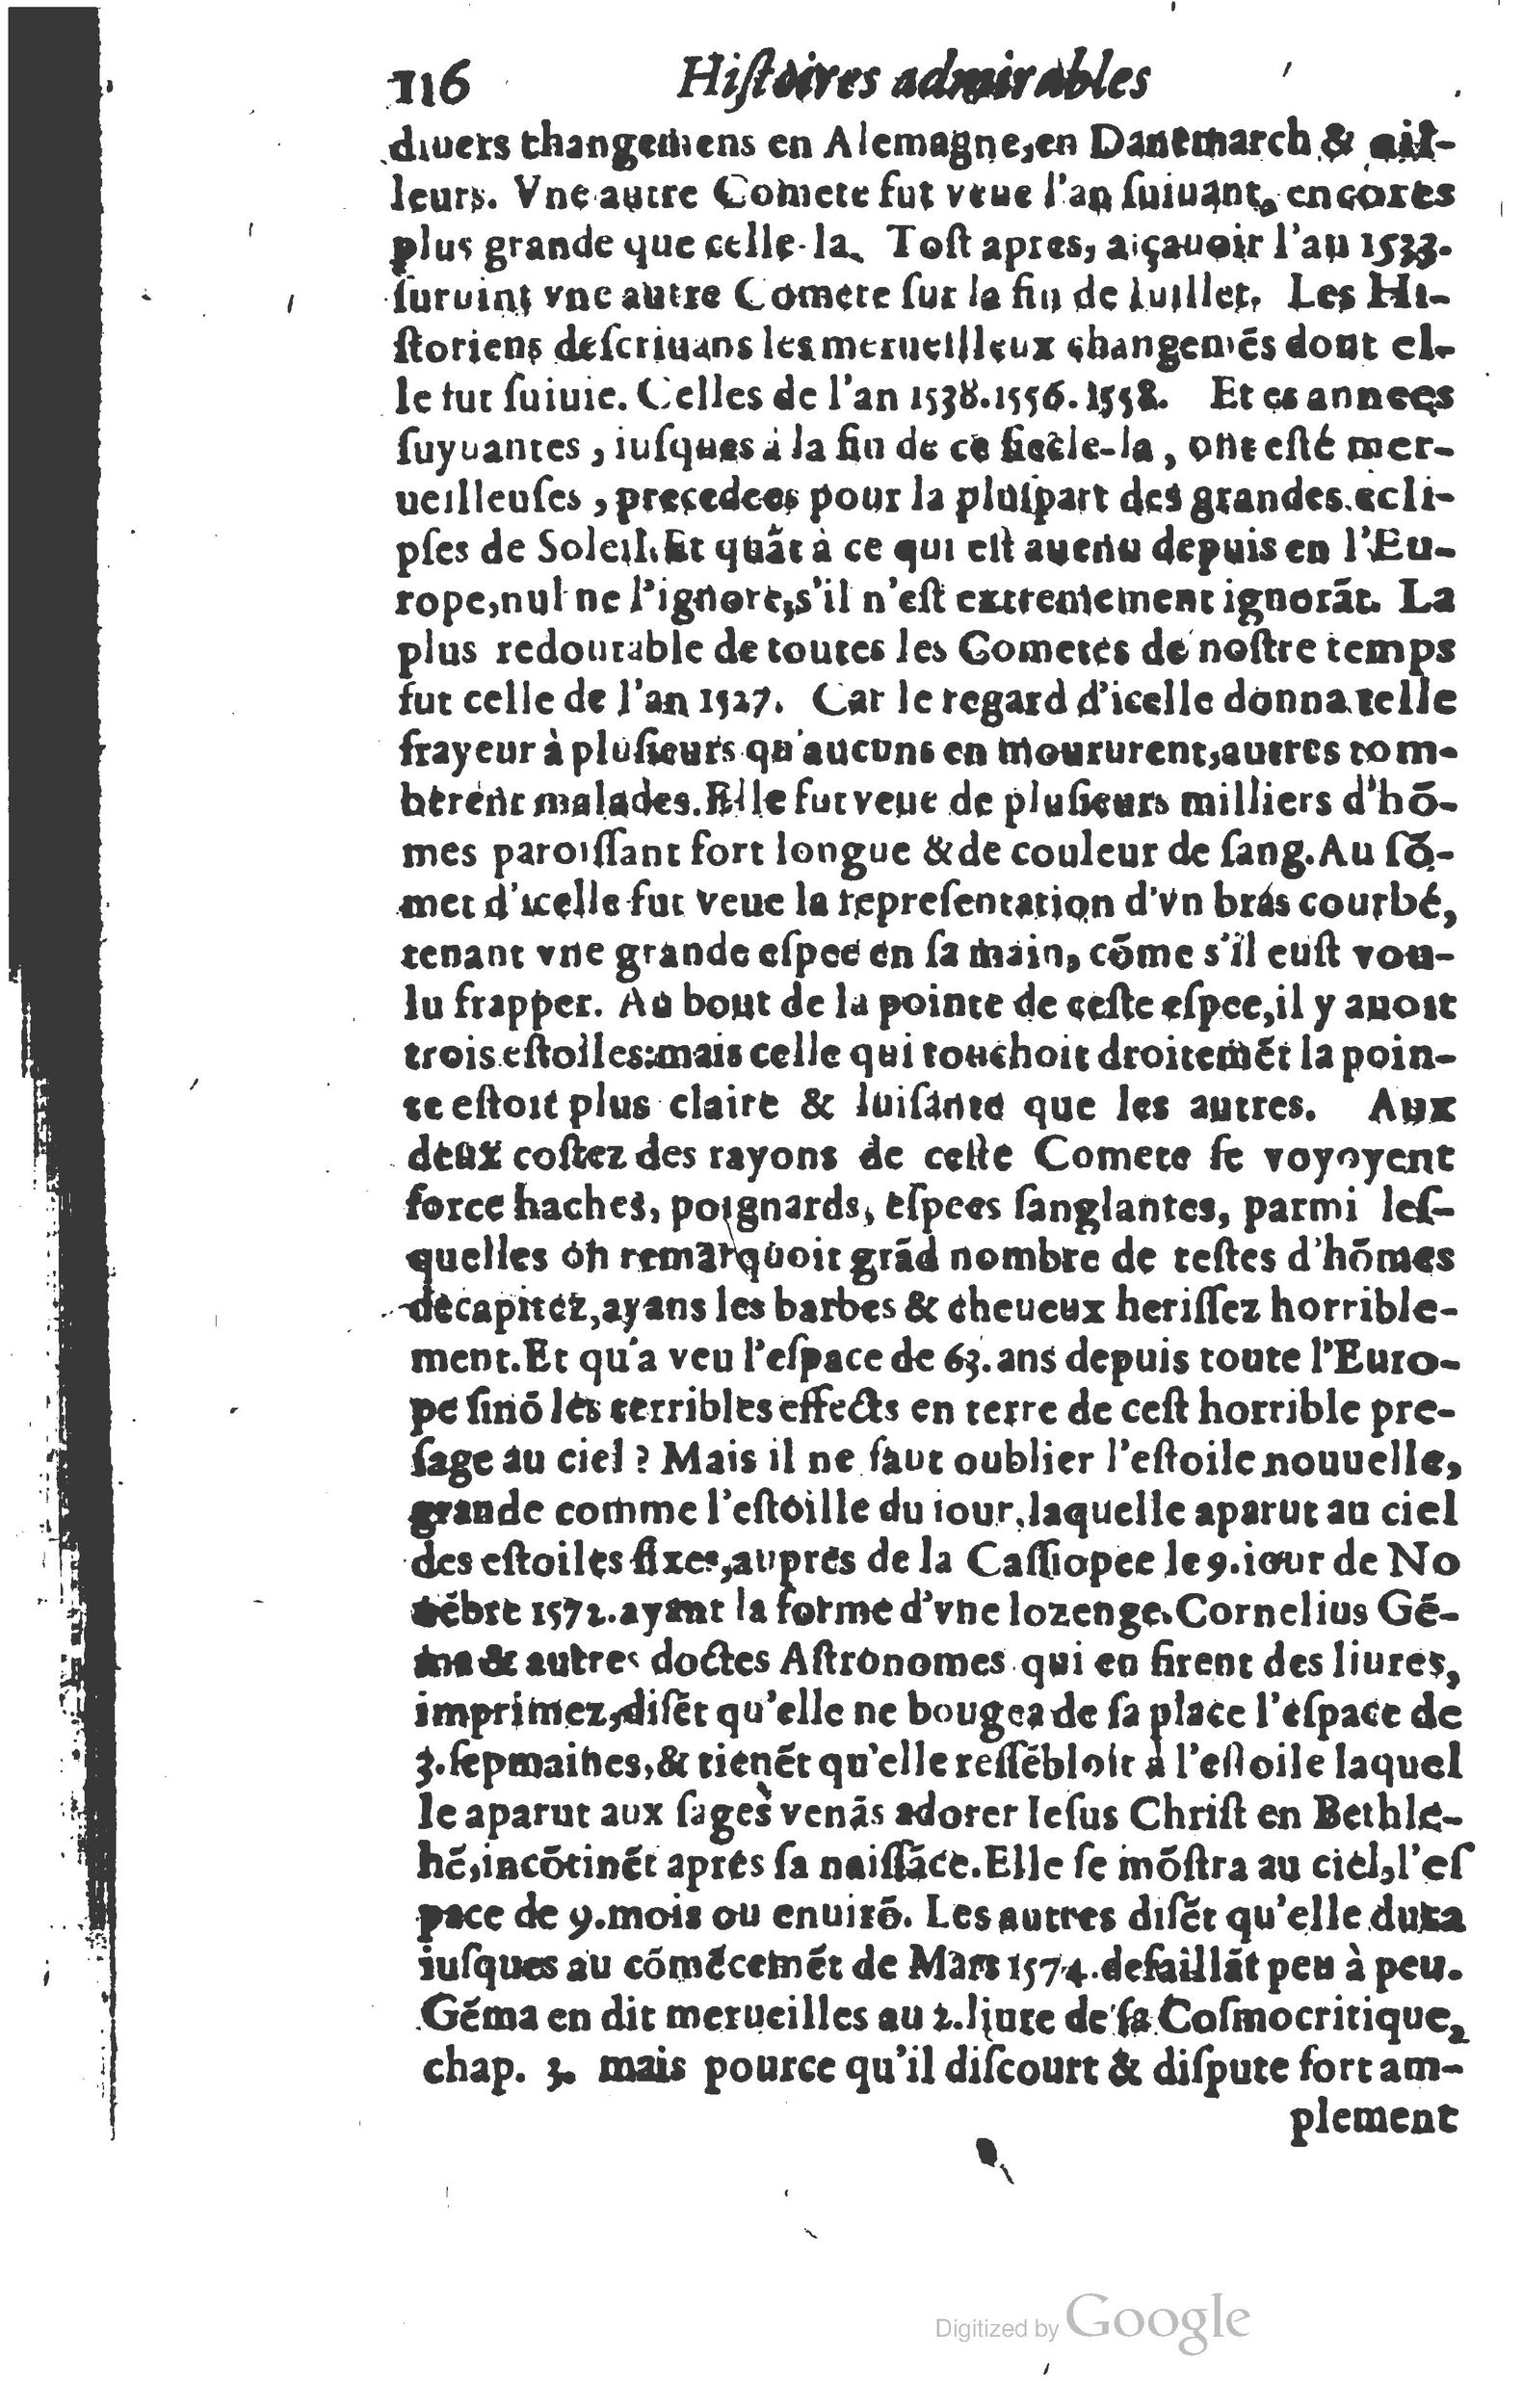 1610 Trésor d’histoires admirables et mémorables de nostre temps Marceau Princeton_Page_0137.jpg